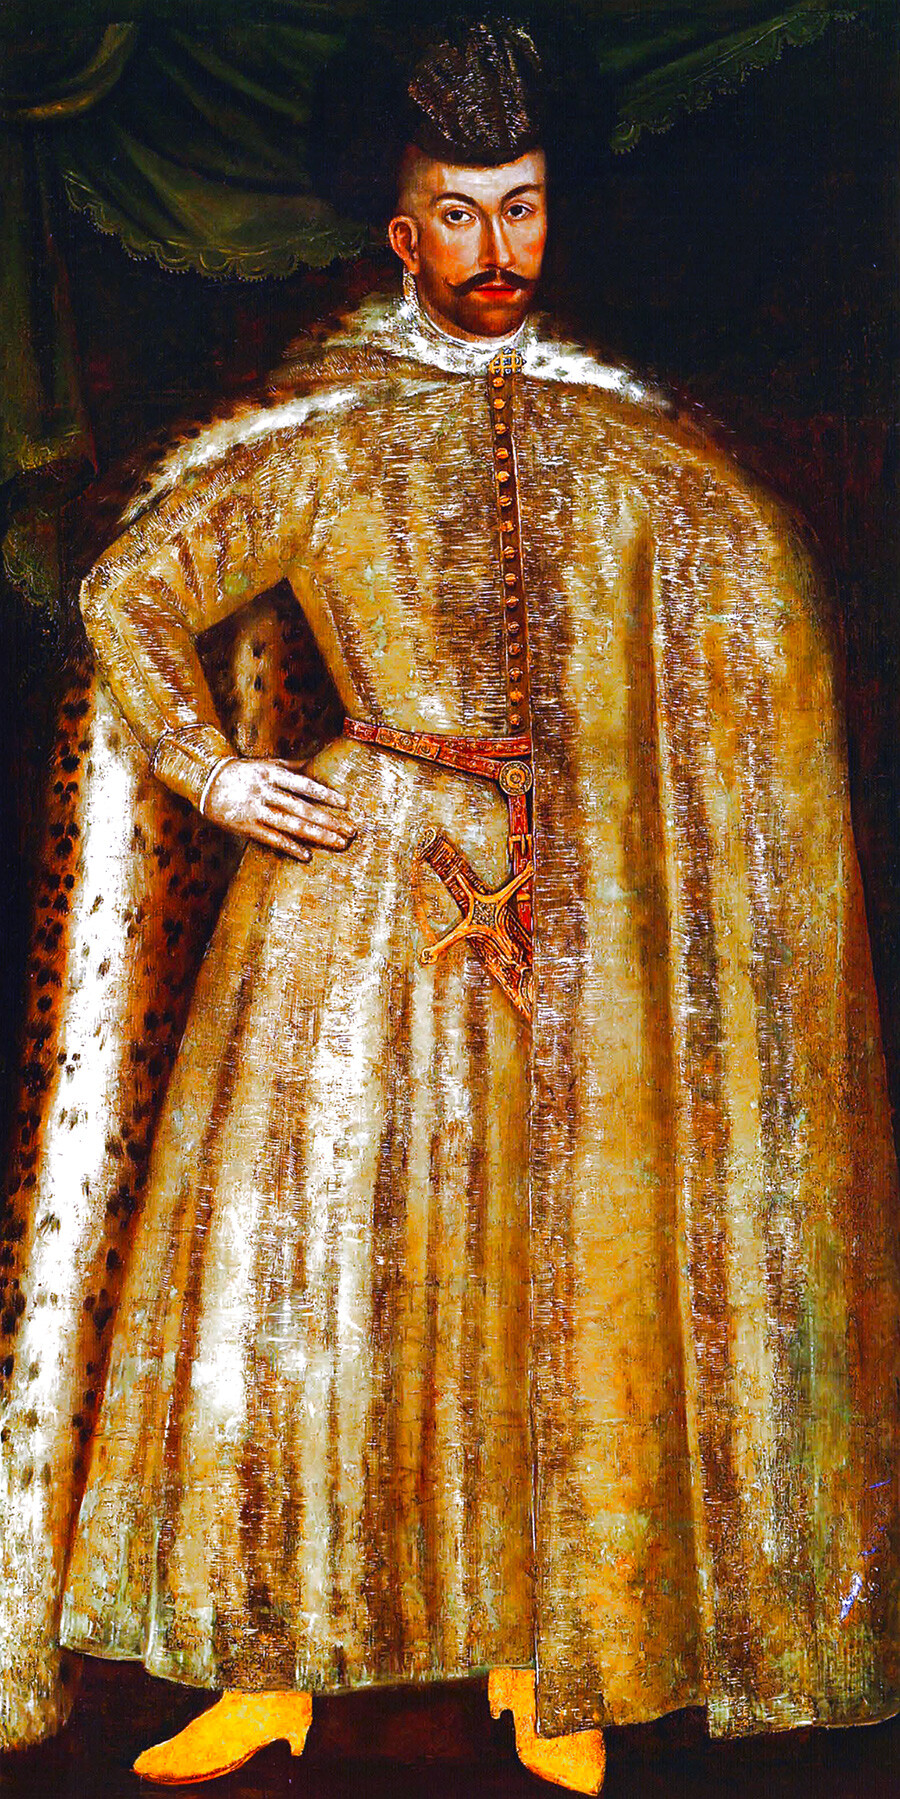 Simeon Bekbulatowitsch von einem unbekannten Maler, zweite Hälfte des 16. Jahrhunderts. Simeon Bekbulatowitsch, der Neffe der zweiten Frau des Zaren, war demnach der Neffe des Zaren.